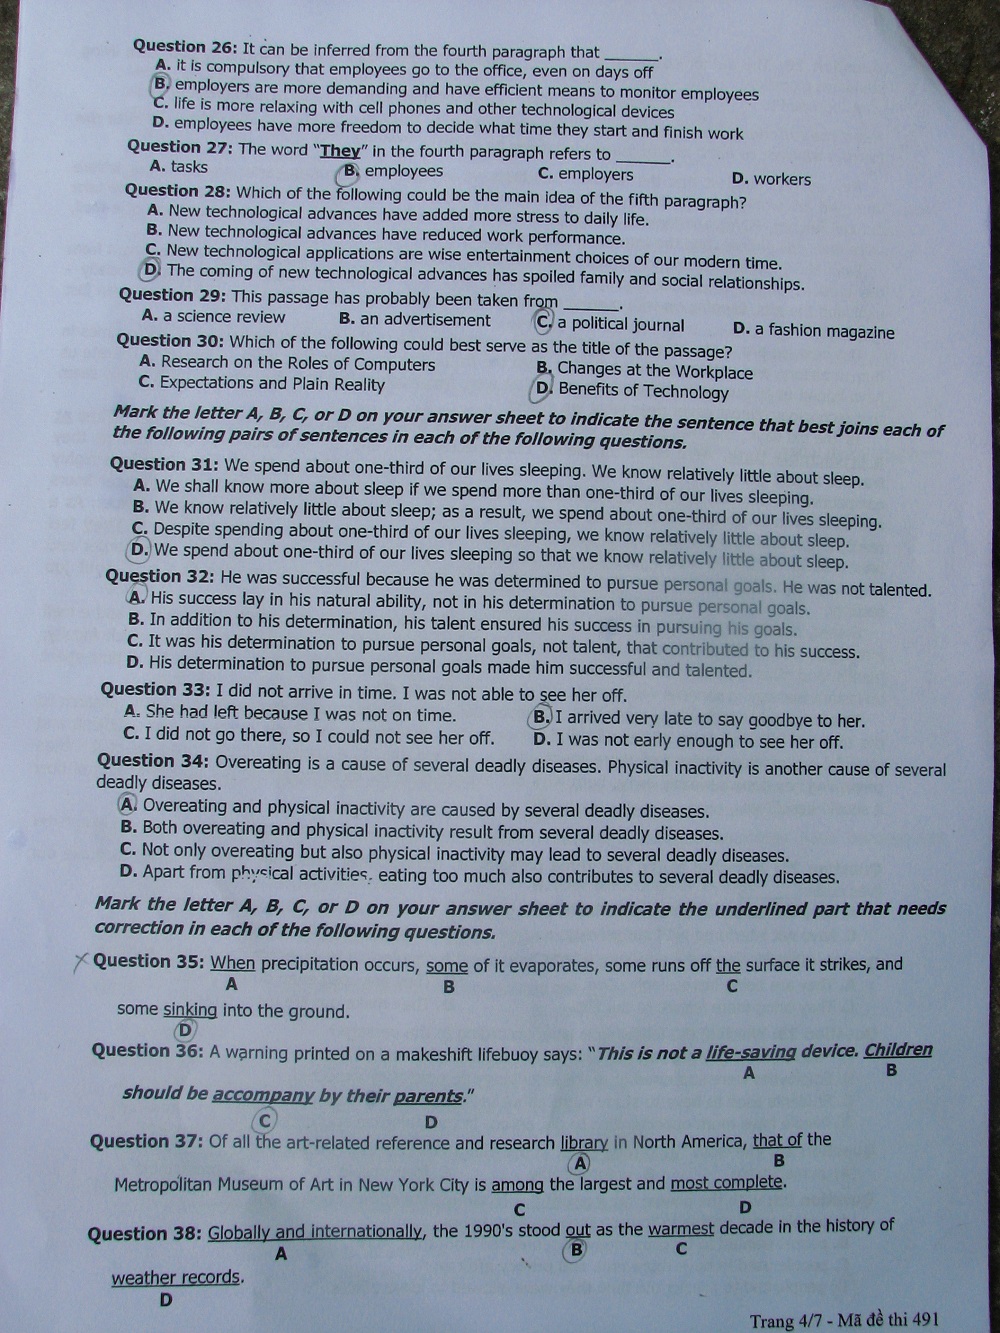 Xã hội - Gợi ý giải đề thi môn Tiếng Anh khối D (Hình 4).